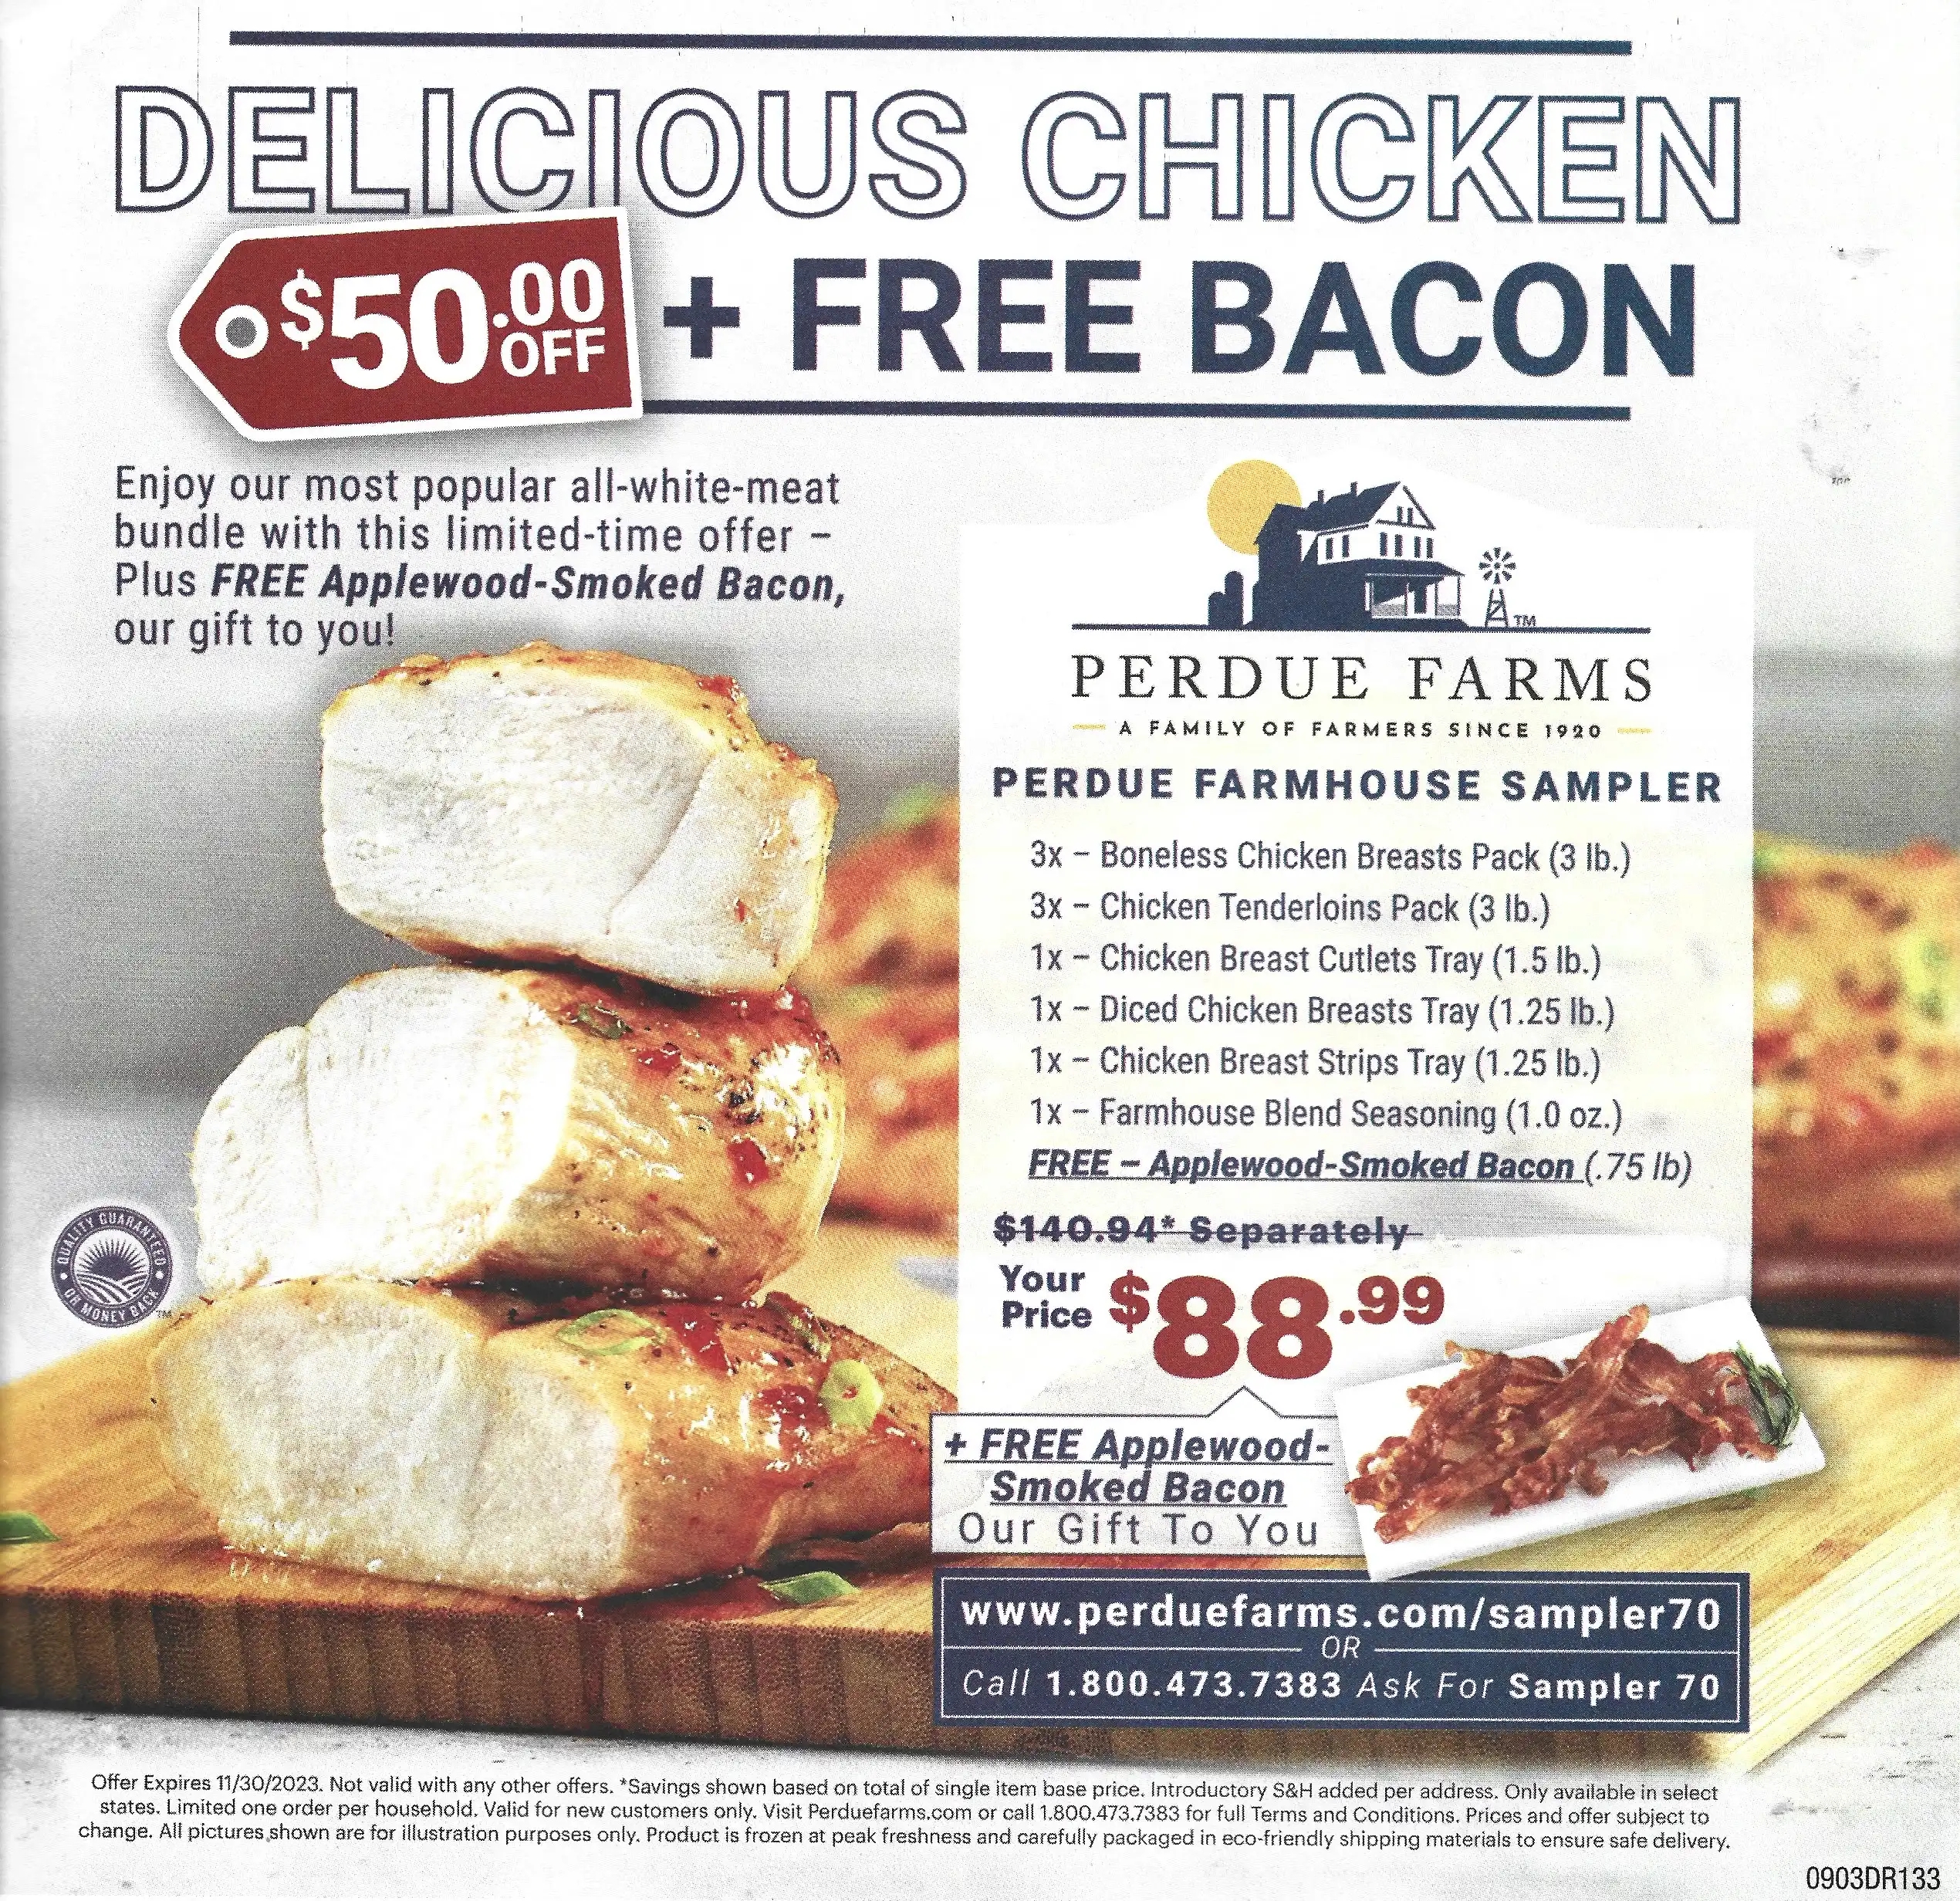 Perdue Farmhouse Sampler + Free Applewood Smoked Bacon - Expires 11/30/2023